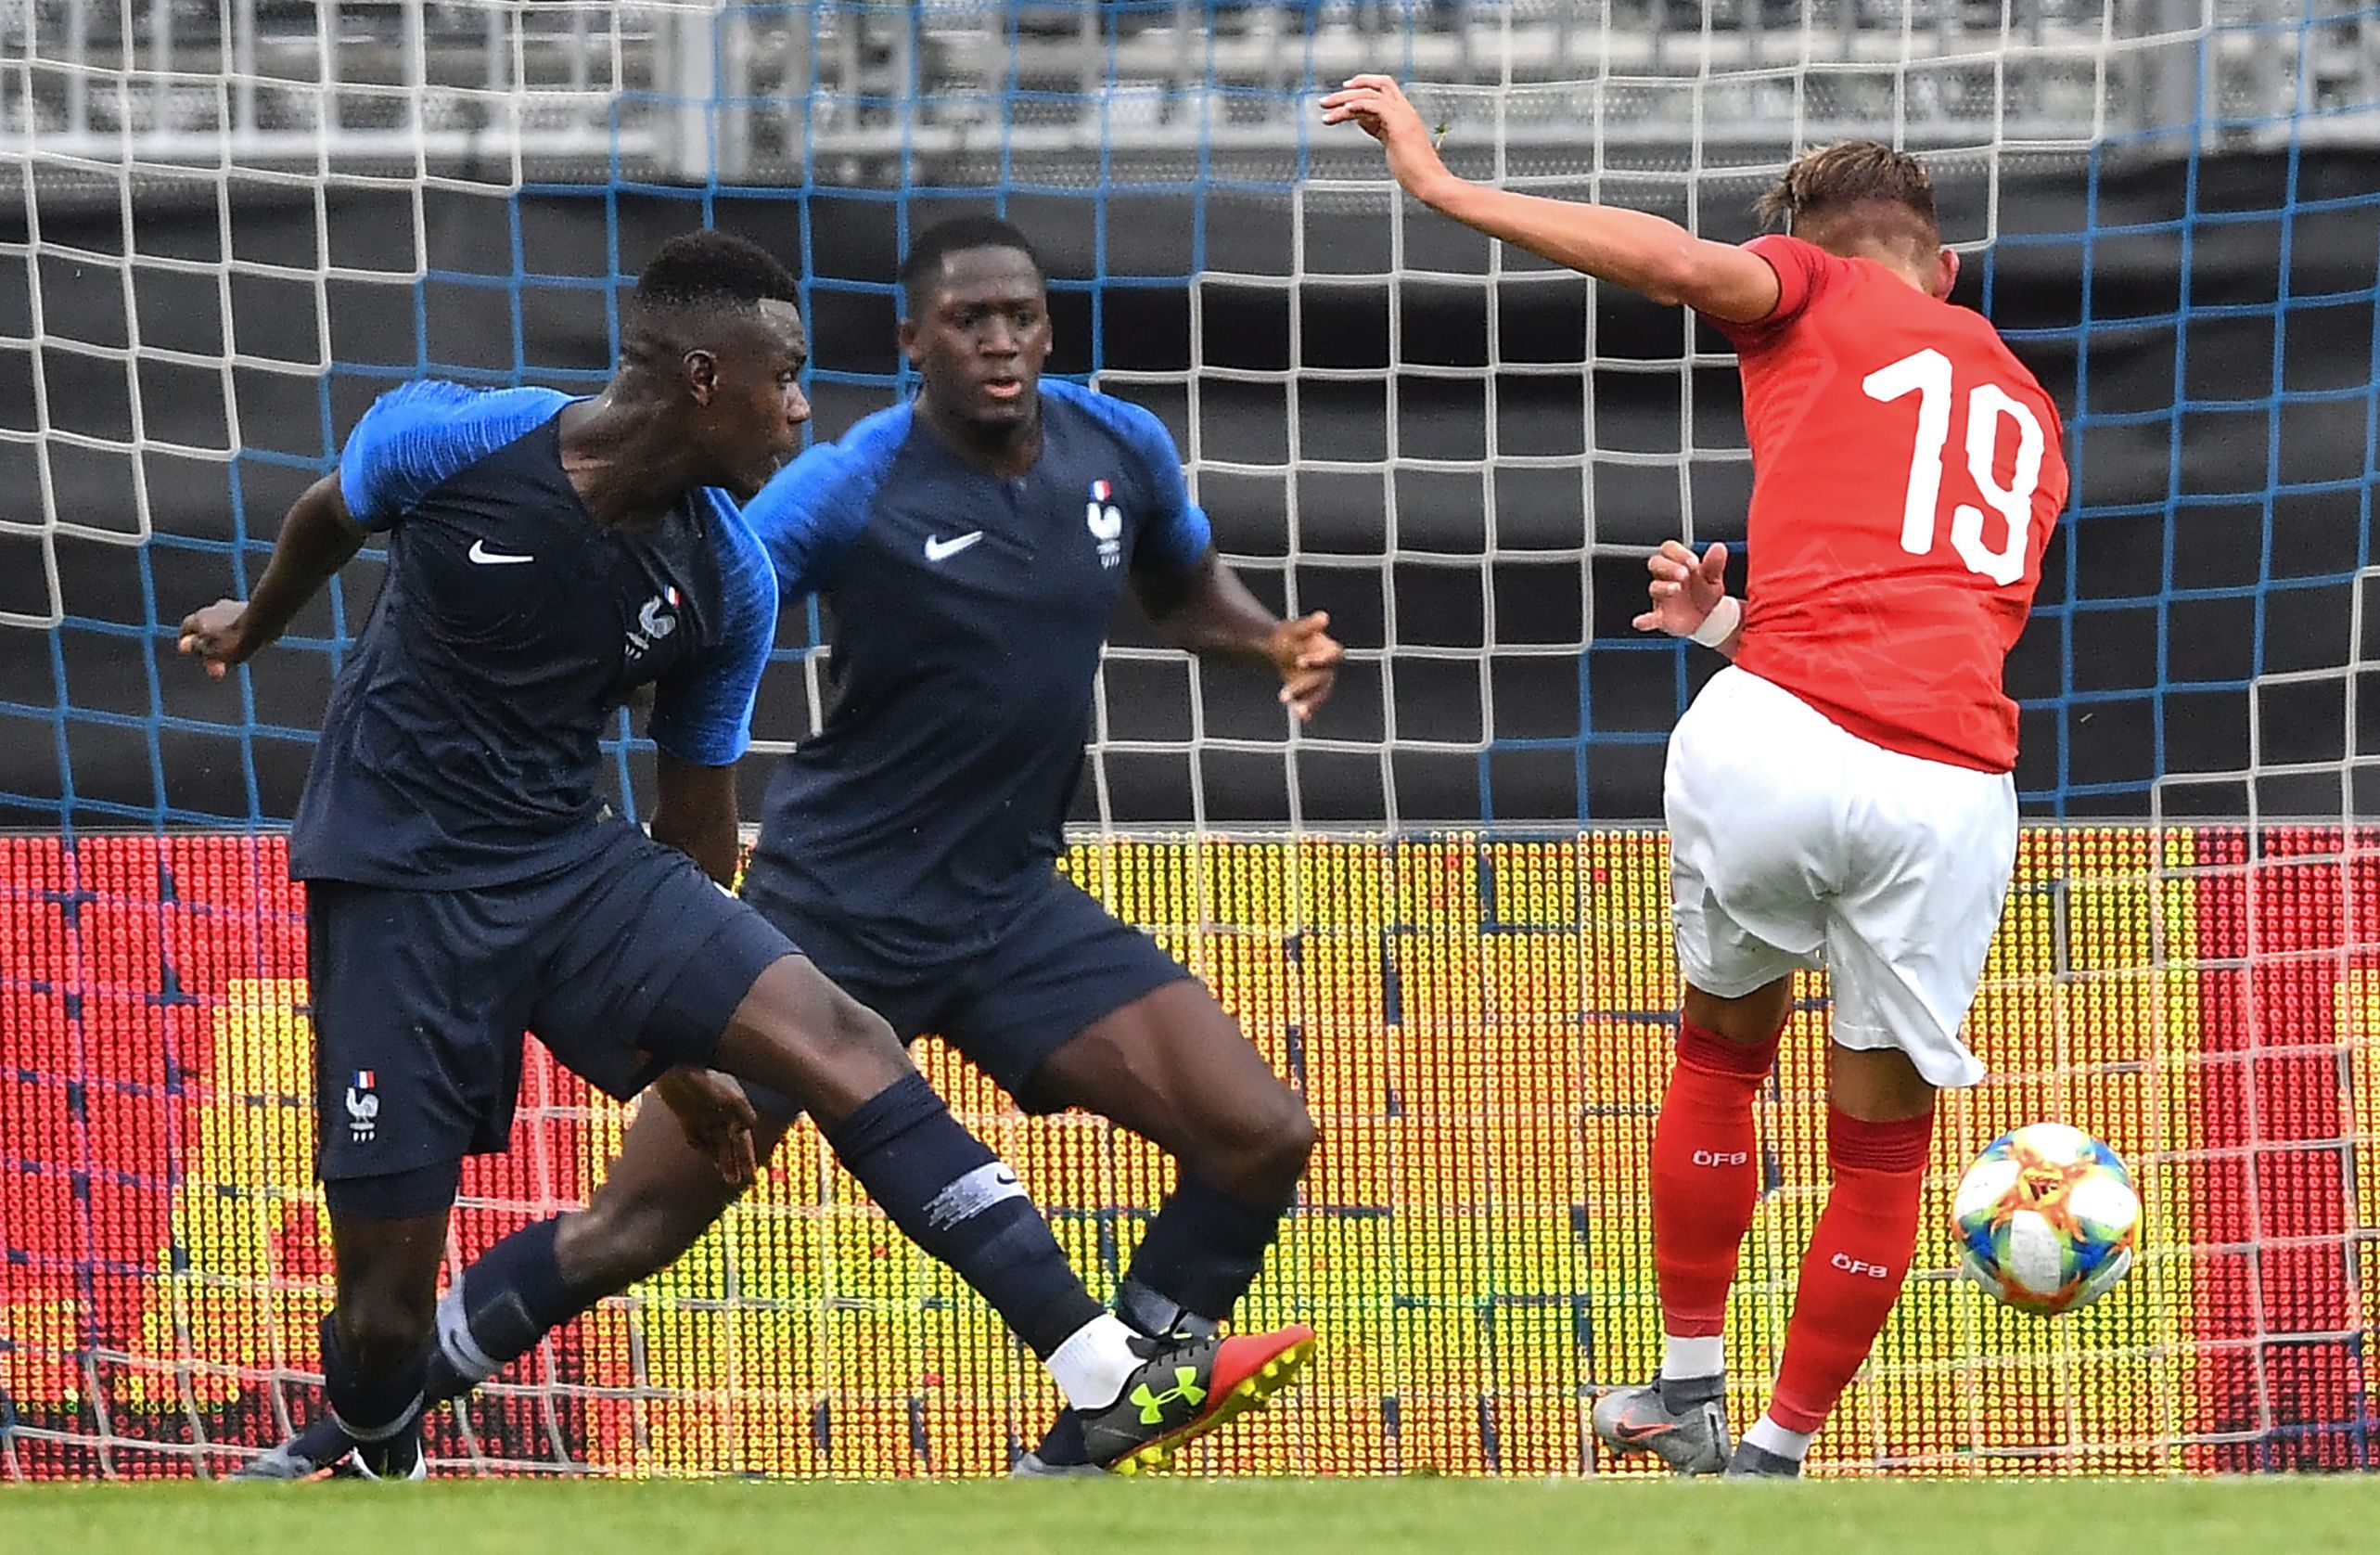 Autriche-France 3-1, les Bleuets s'inclinent après deux grosses erreurs